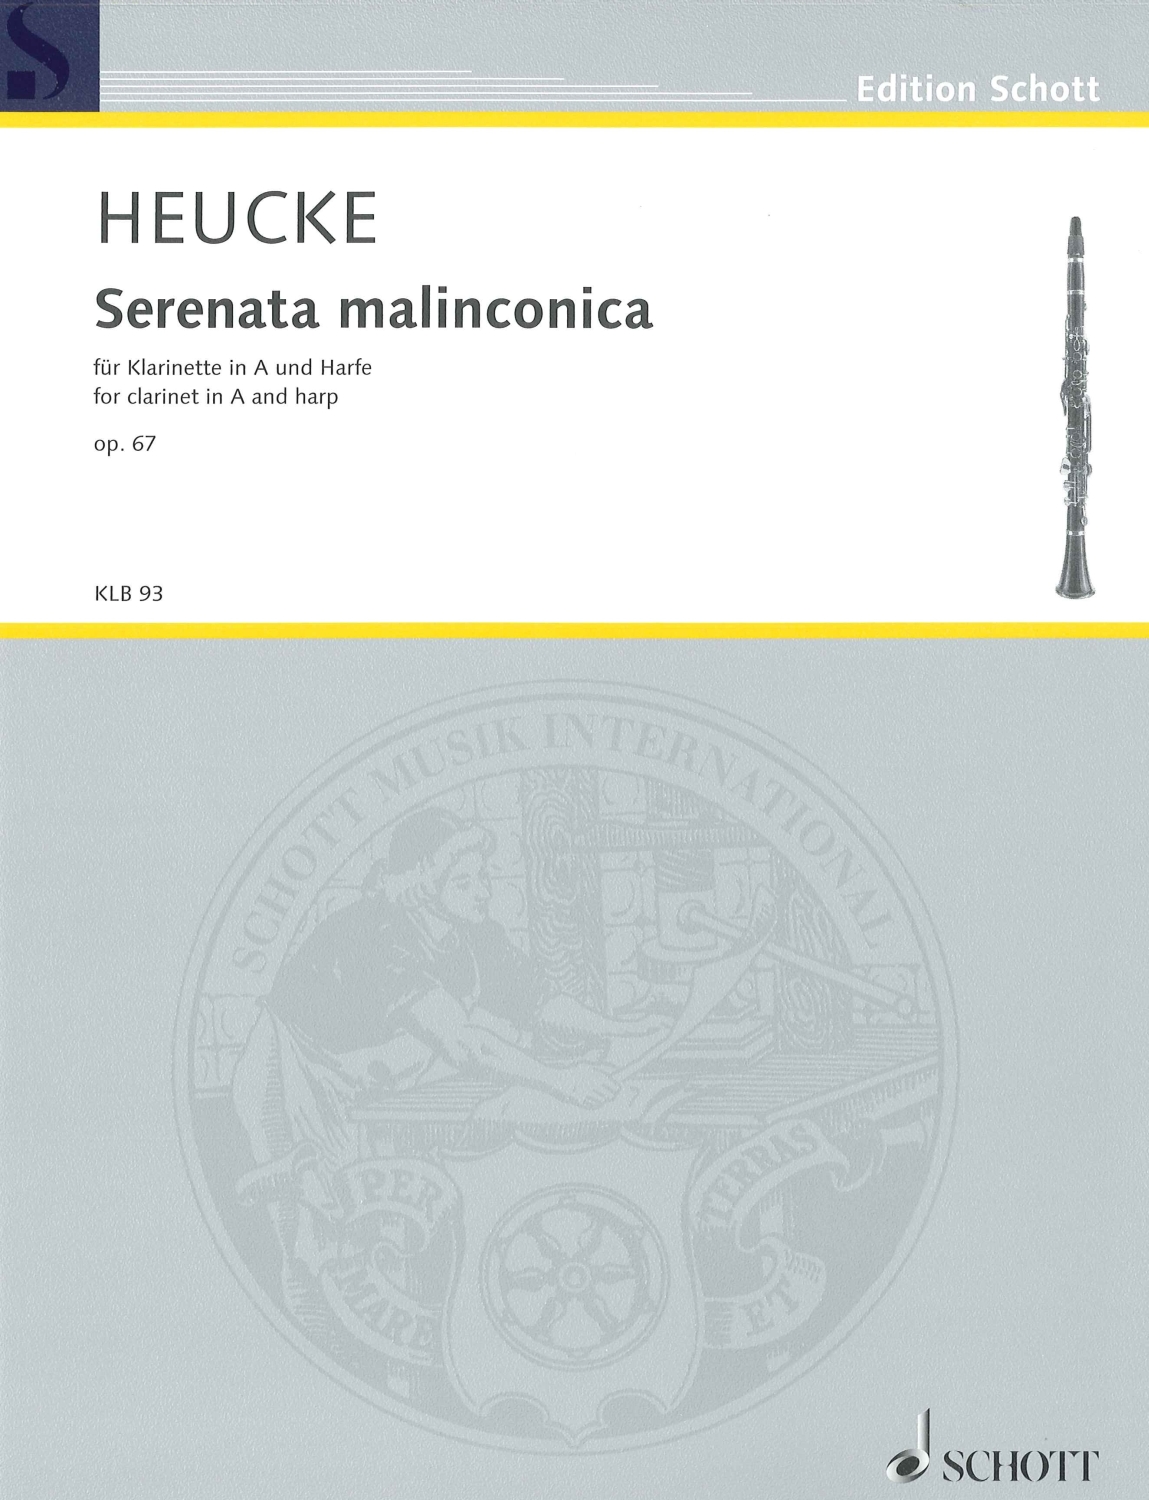 stefan-heucke-serenata-malinconica-op-67-clr-hp-_0001.JPG